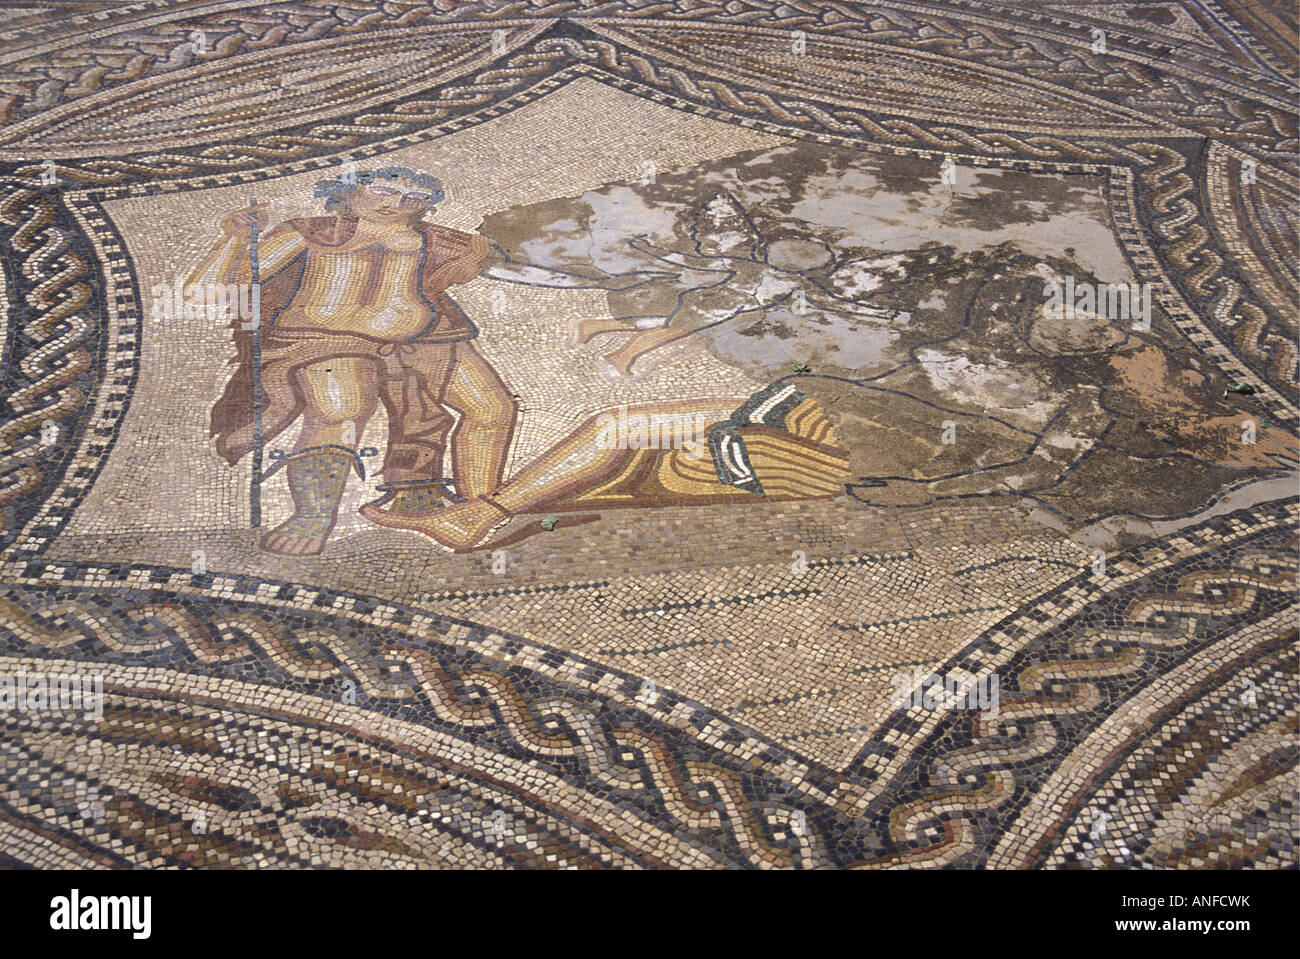 Détail de mosaïques dans les ruines romaines à Volubilis Maroc Afrique du Nord Banque D'Images